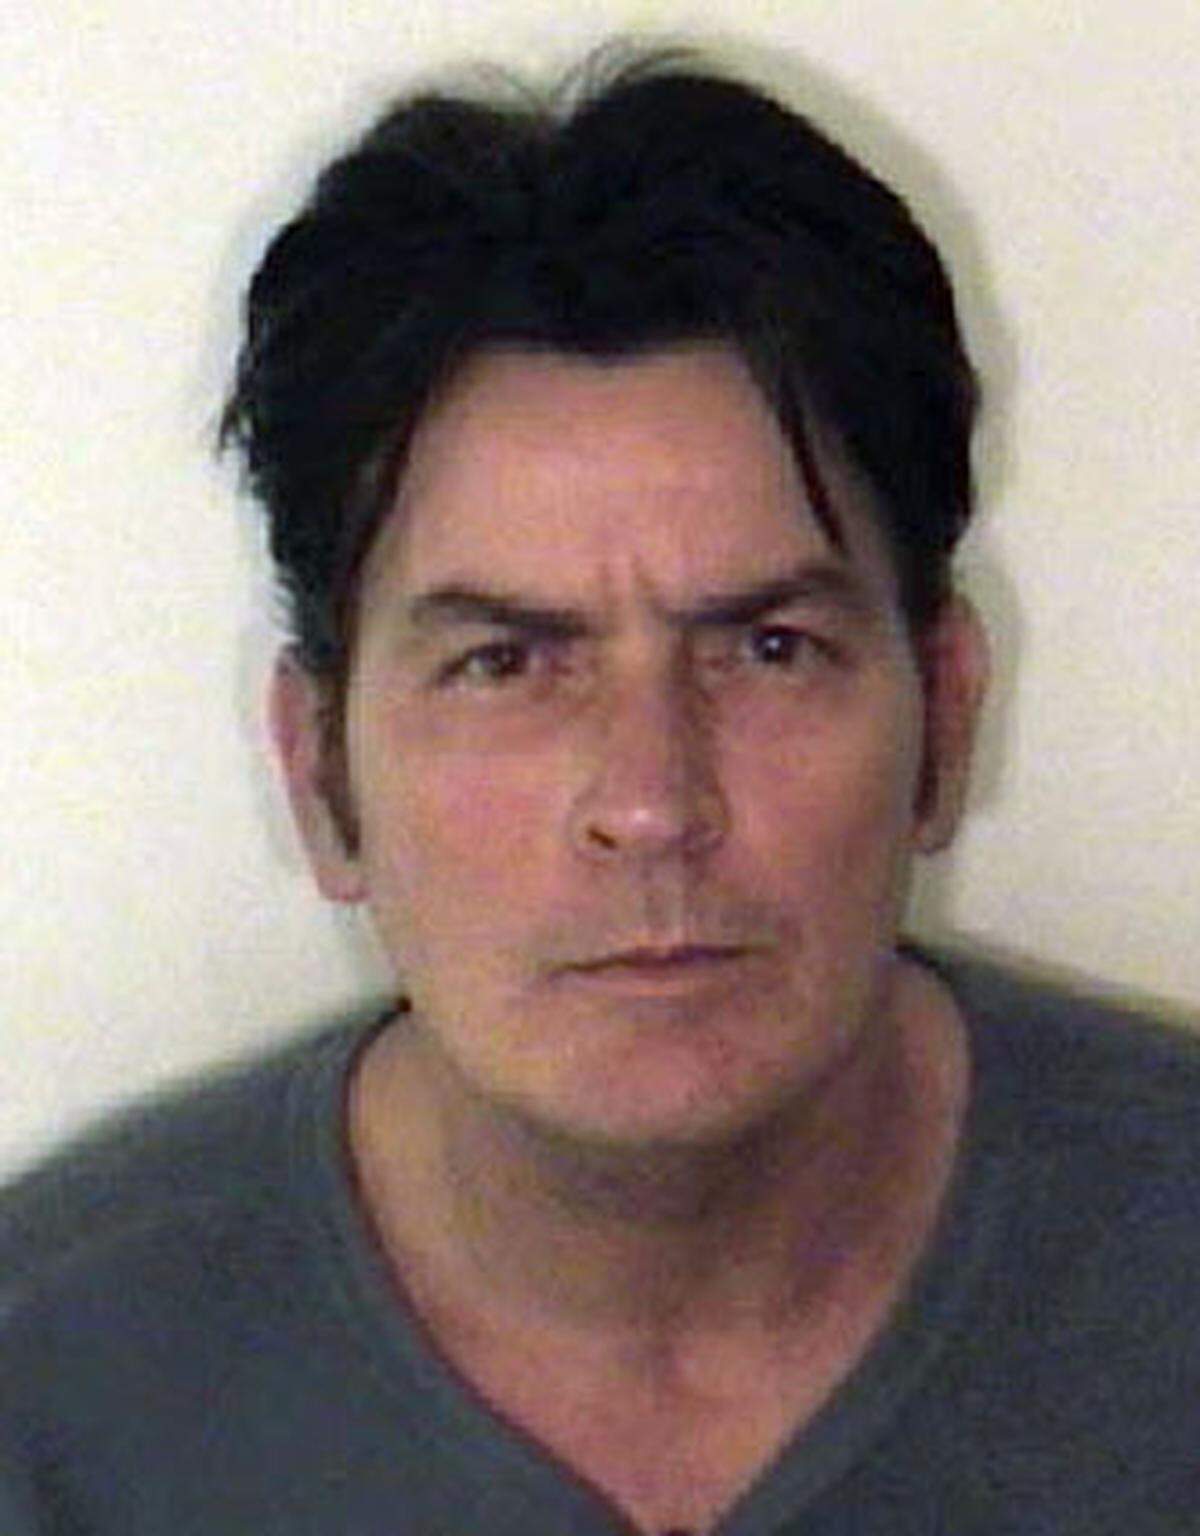 Der Hollywood-Schauspieler Charlie Sheen wurde am 25. Dezember 2009 wegen "häuslicher Gewalt" festgenommen ins Gefängnis von Pitkin County gebracht. Der 42-Jährige soll seine Ehefrau Brooke Mueller nach einem heftigen Streit angegriffen haben.